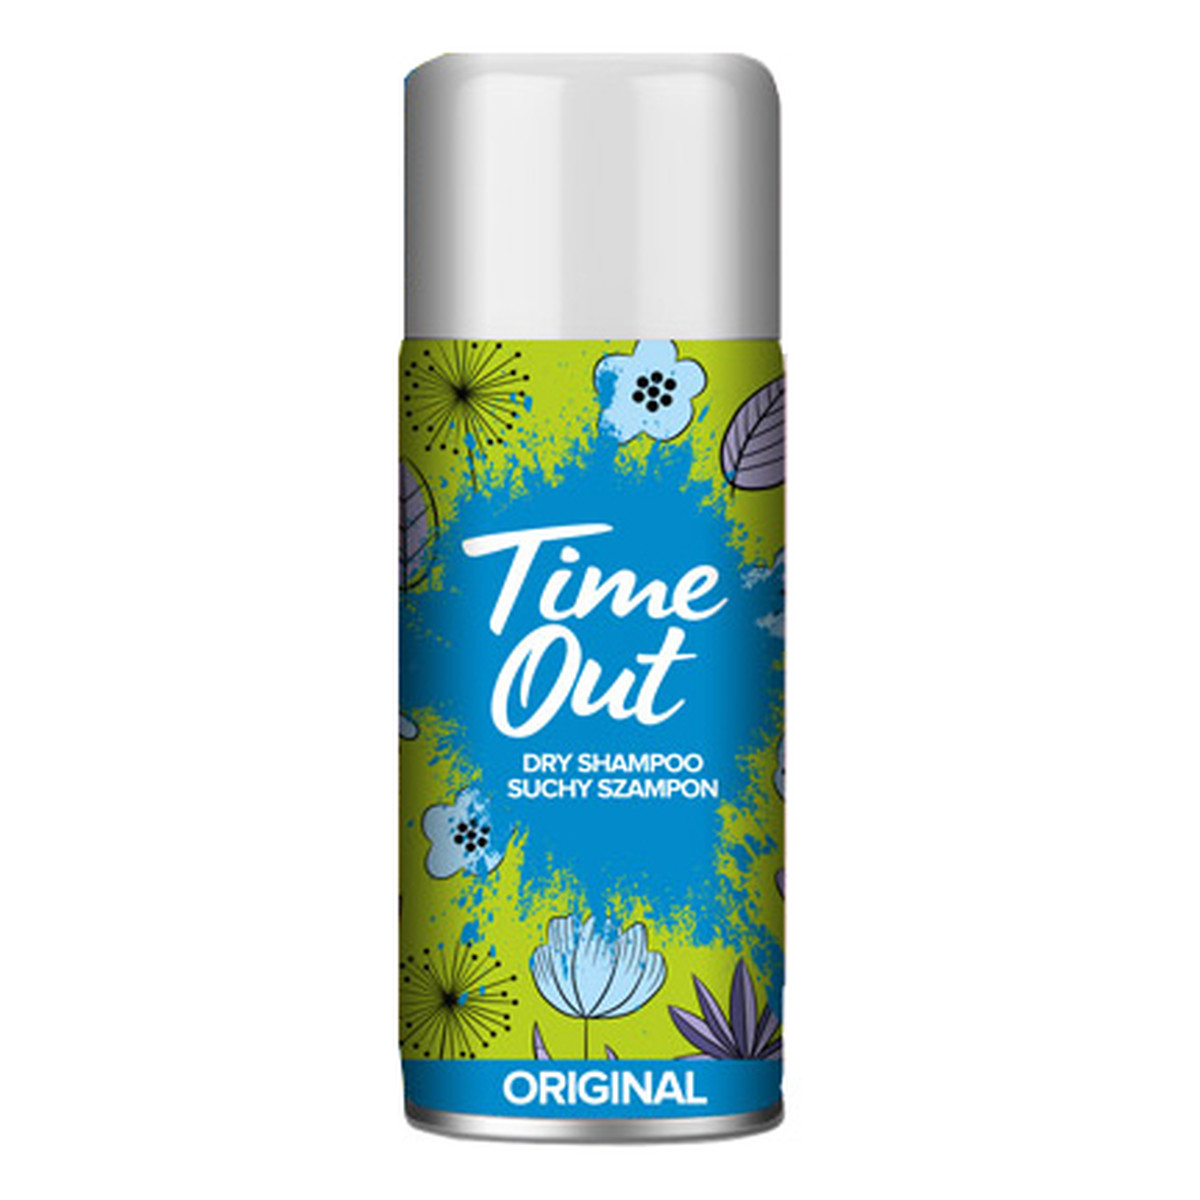 TIME OUT ORIGINAL Suchy szampon do włosów 75ml